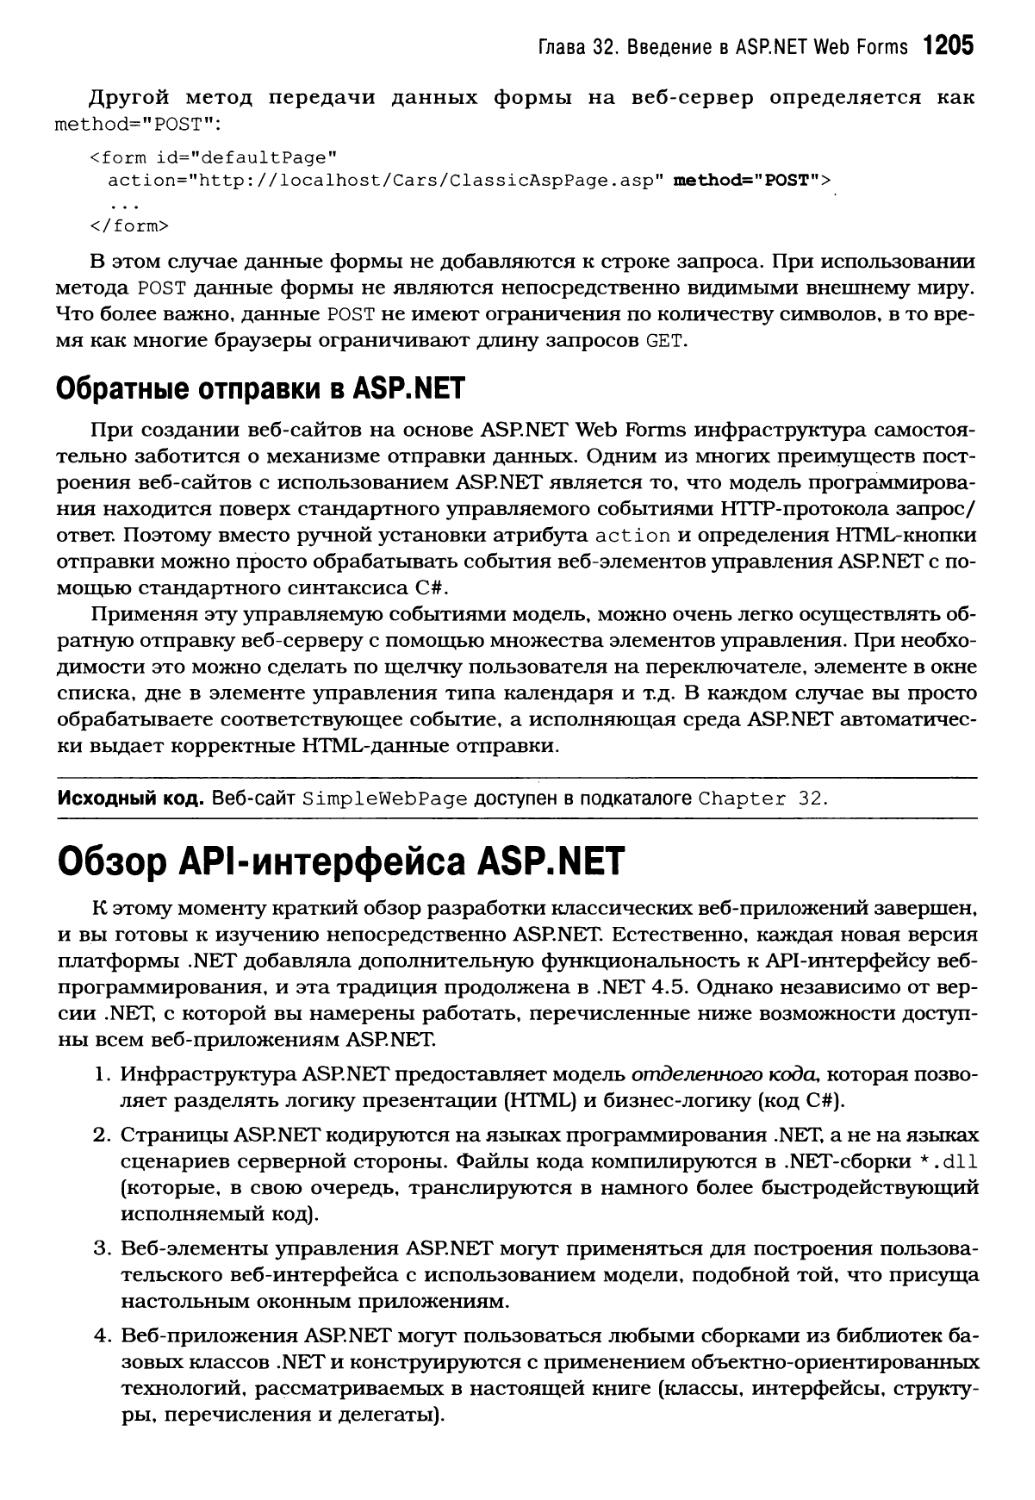 Обзор API-интерфейса ASP.NET